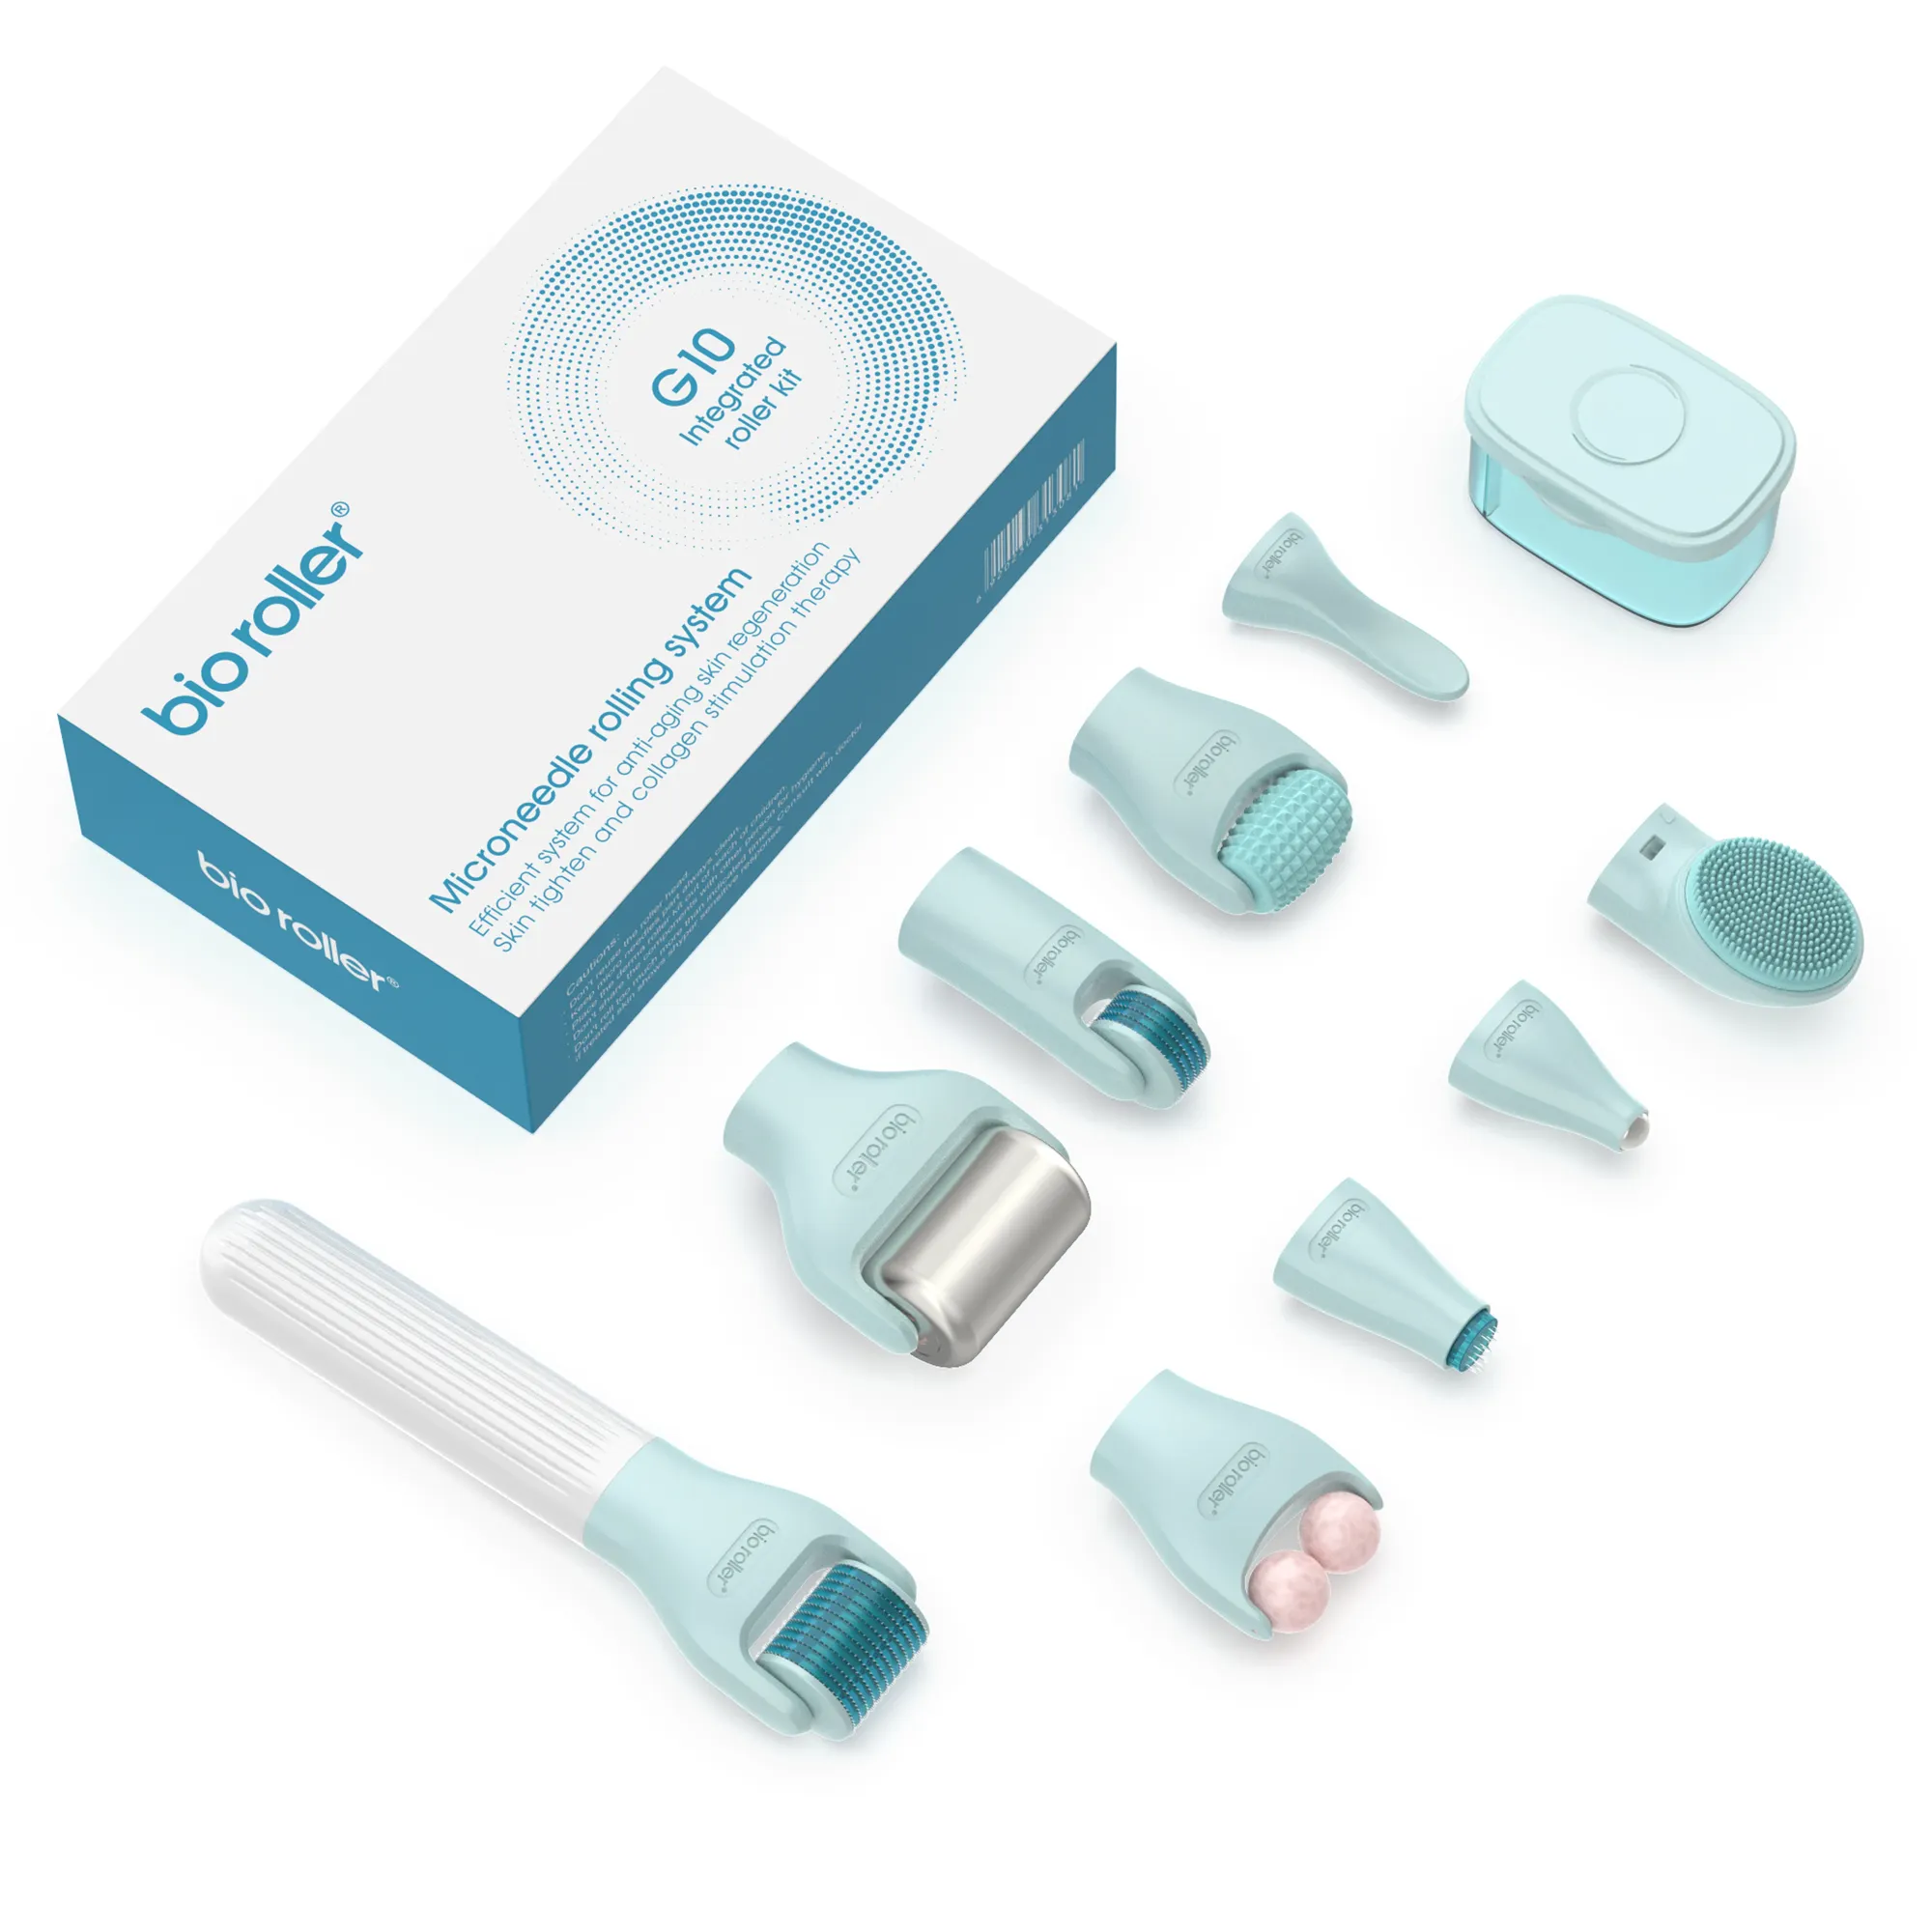 Mikronadel-Kit 10 in 1 Bio Roller G10 Derma Roller Kit Nadel zu Hause verwenden Hautpflege Gesichts werkzeug Beauty-Kit für die Haut behandlung